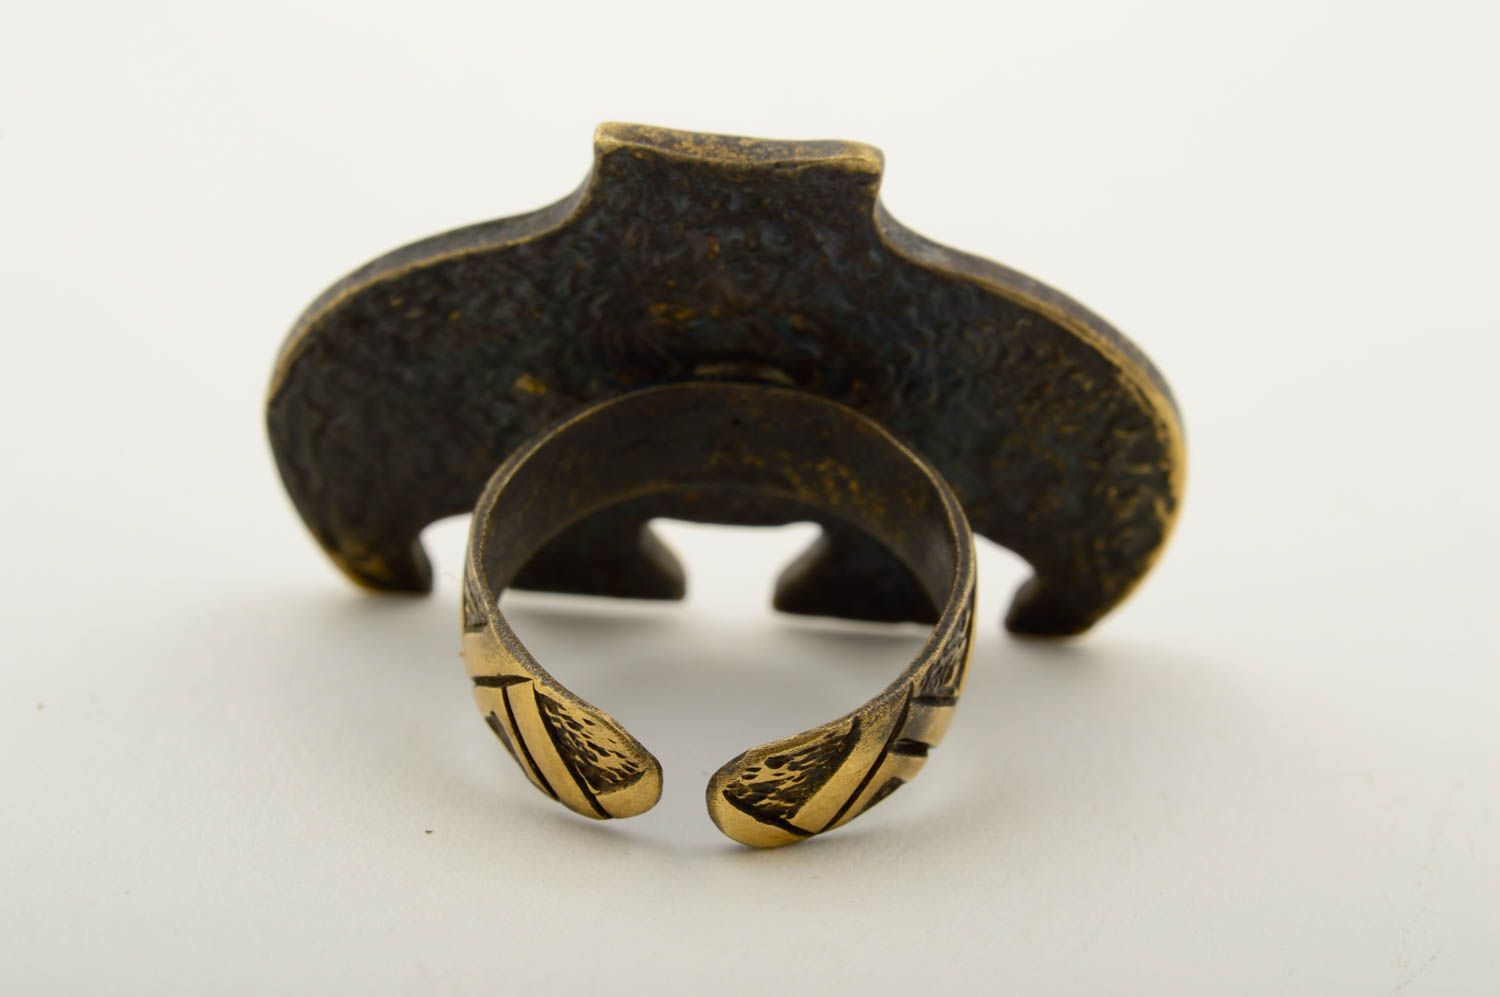 Handmade bronze ring bronze jewelry metal accessories stylish jewelry ring photo 4